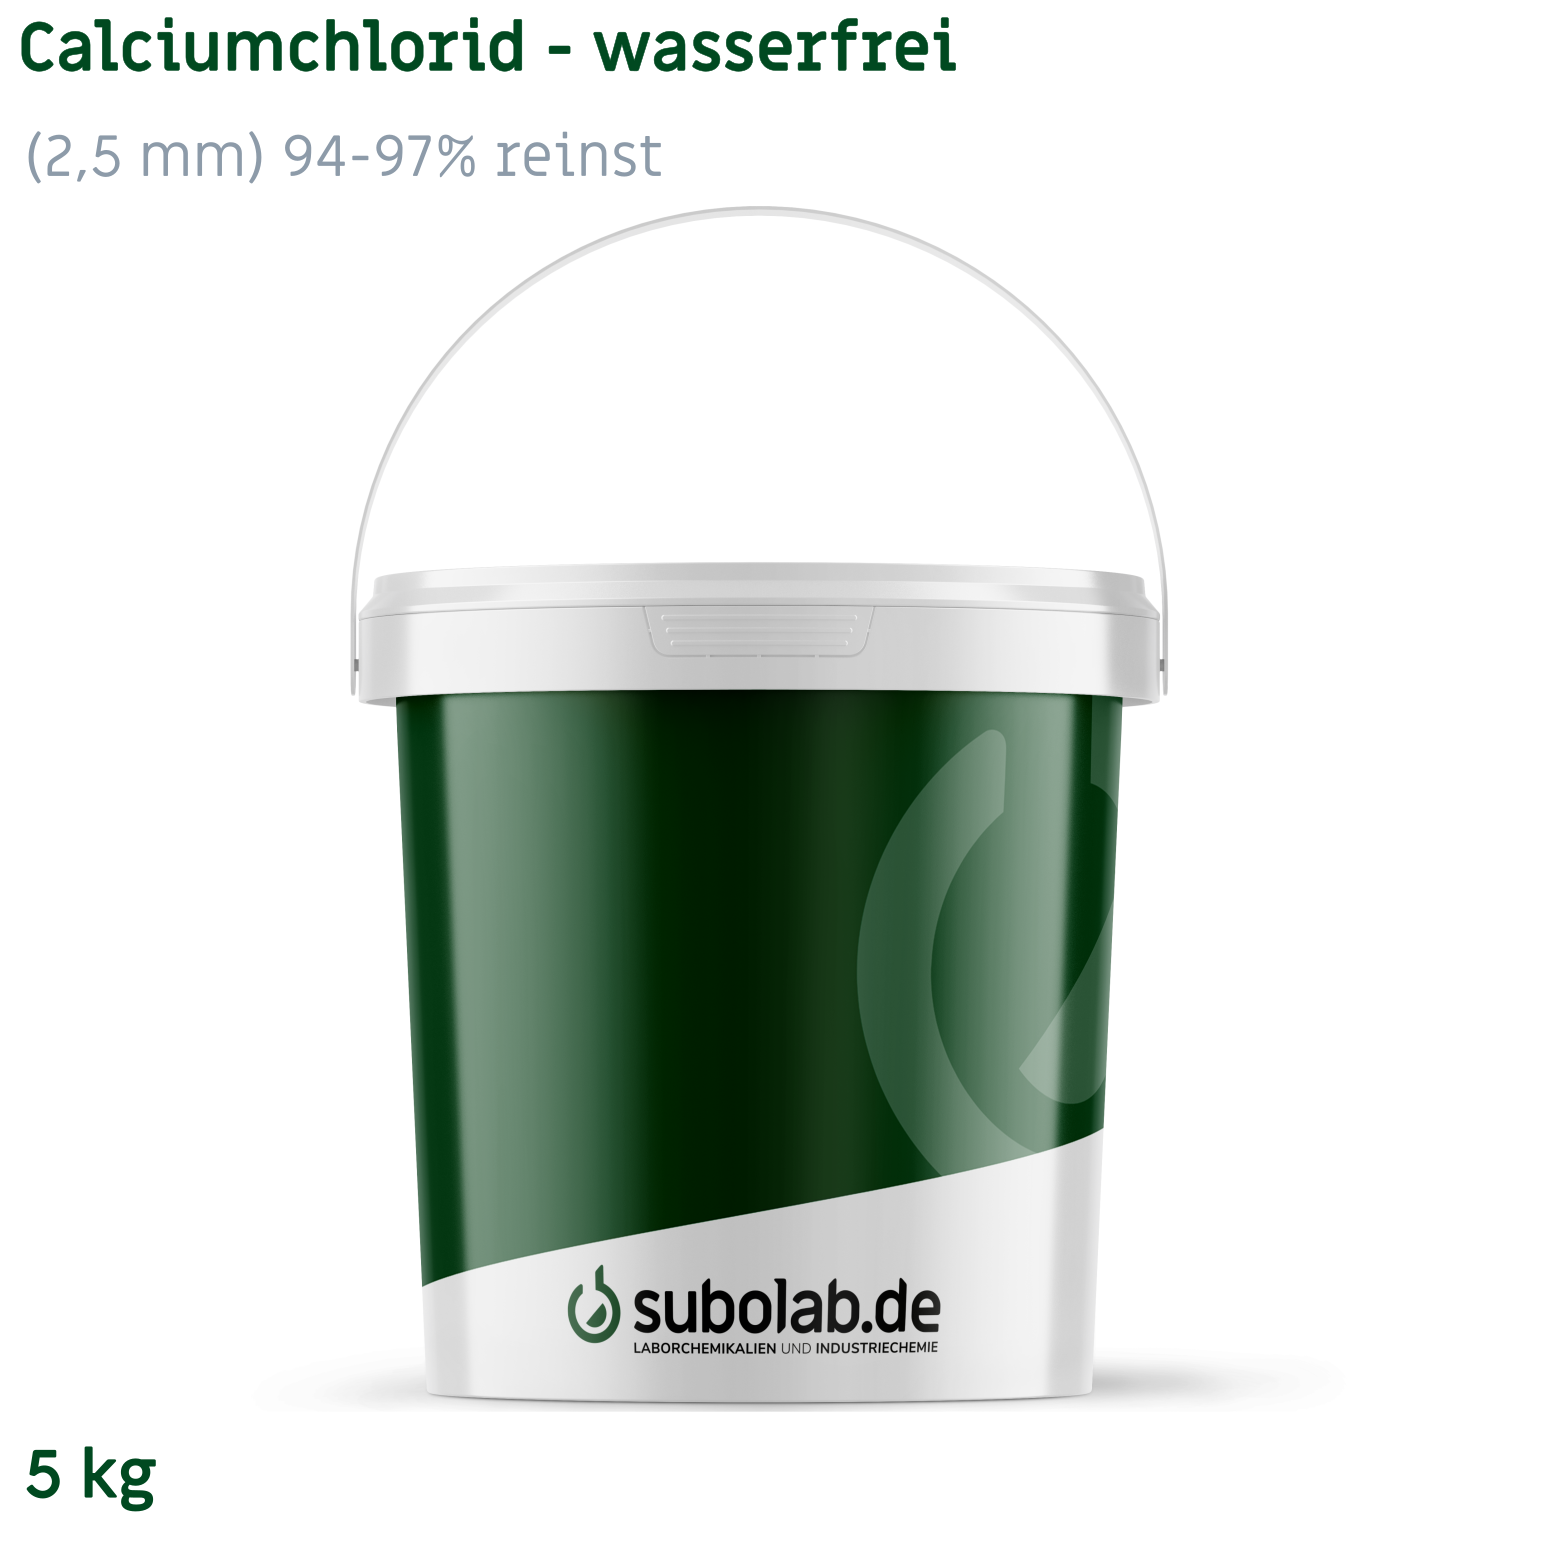 Bild von Calciumchlorid - wasserfrei gekörnt (2,5 mm) 94-97% reinst (5 kg)